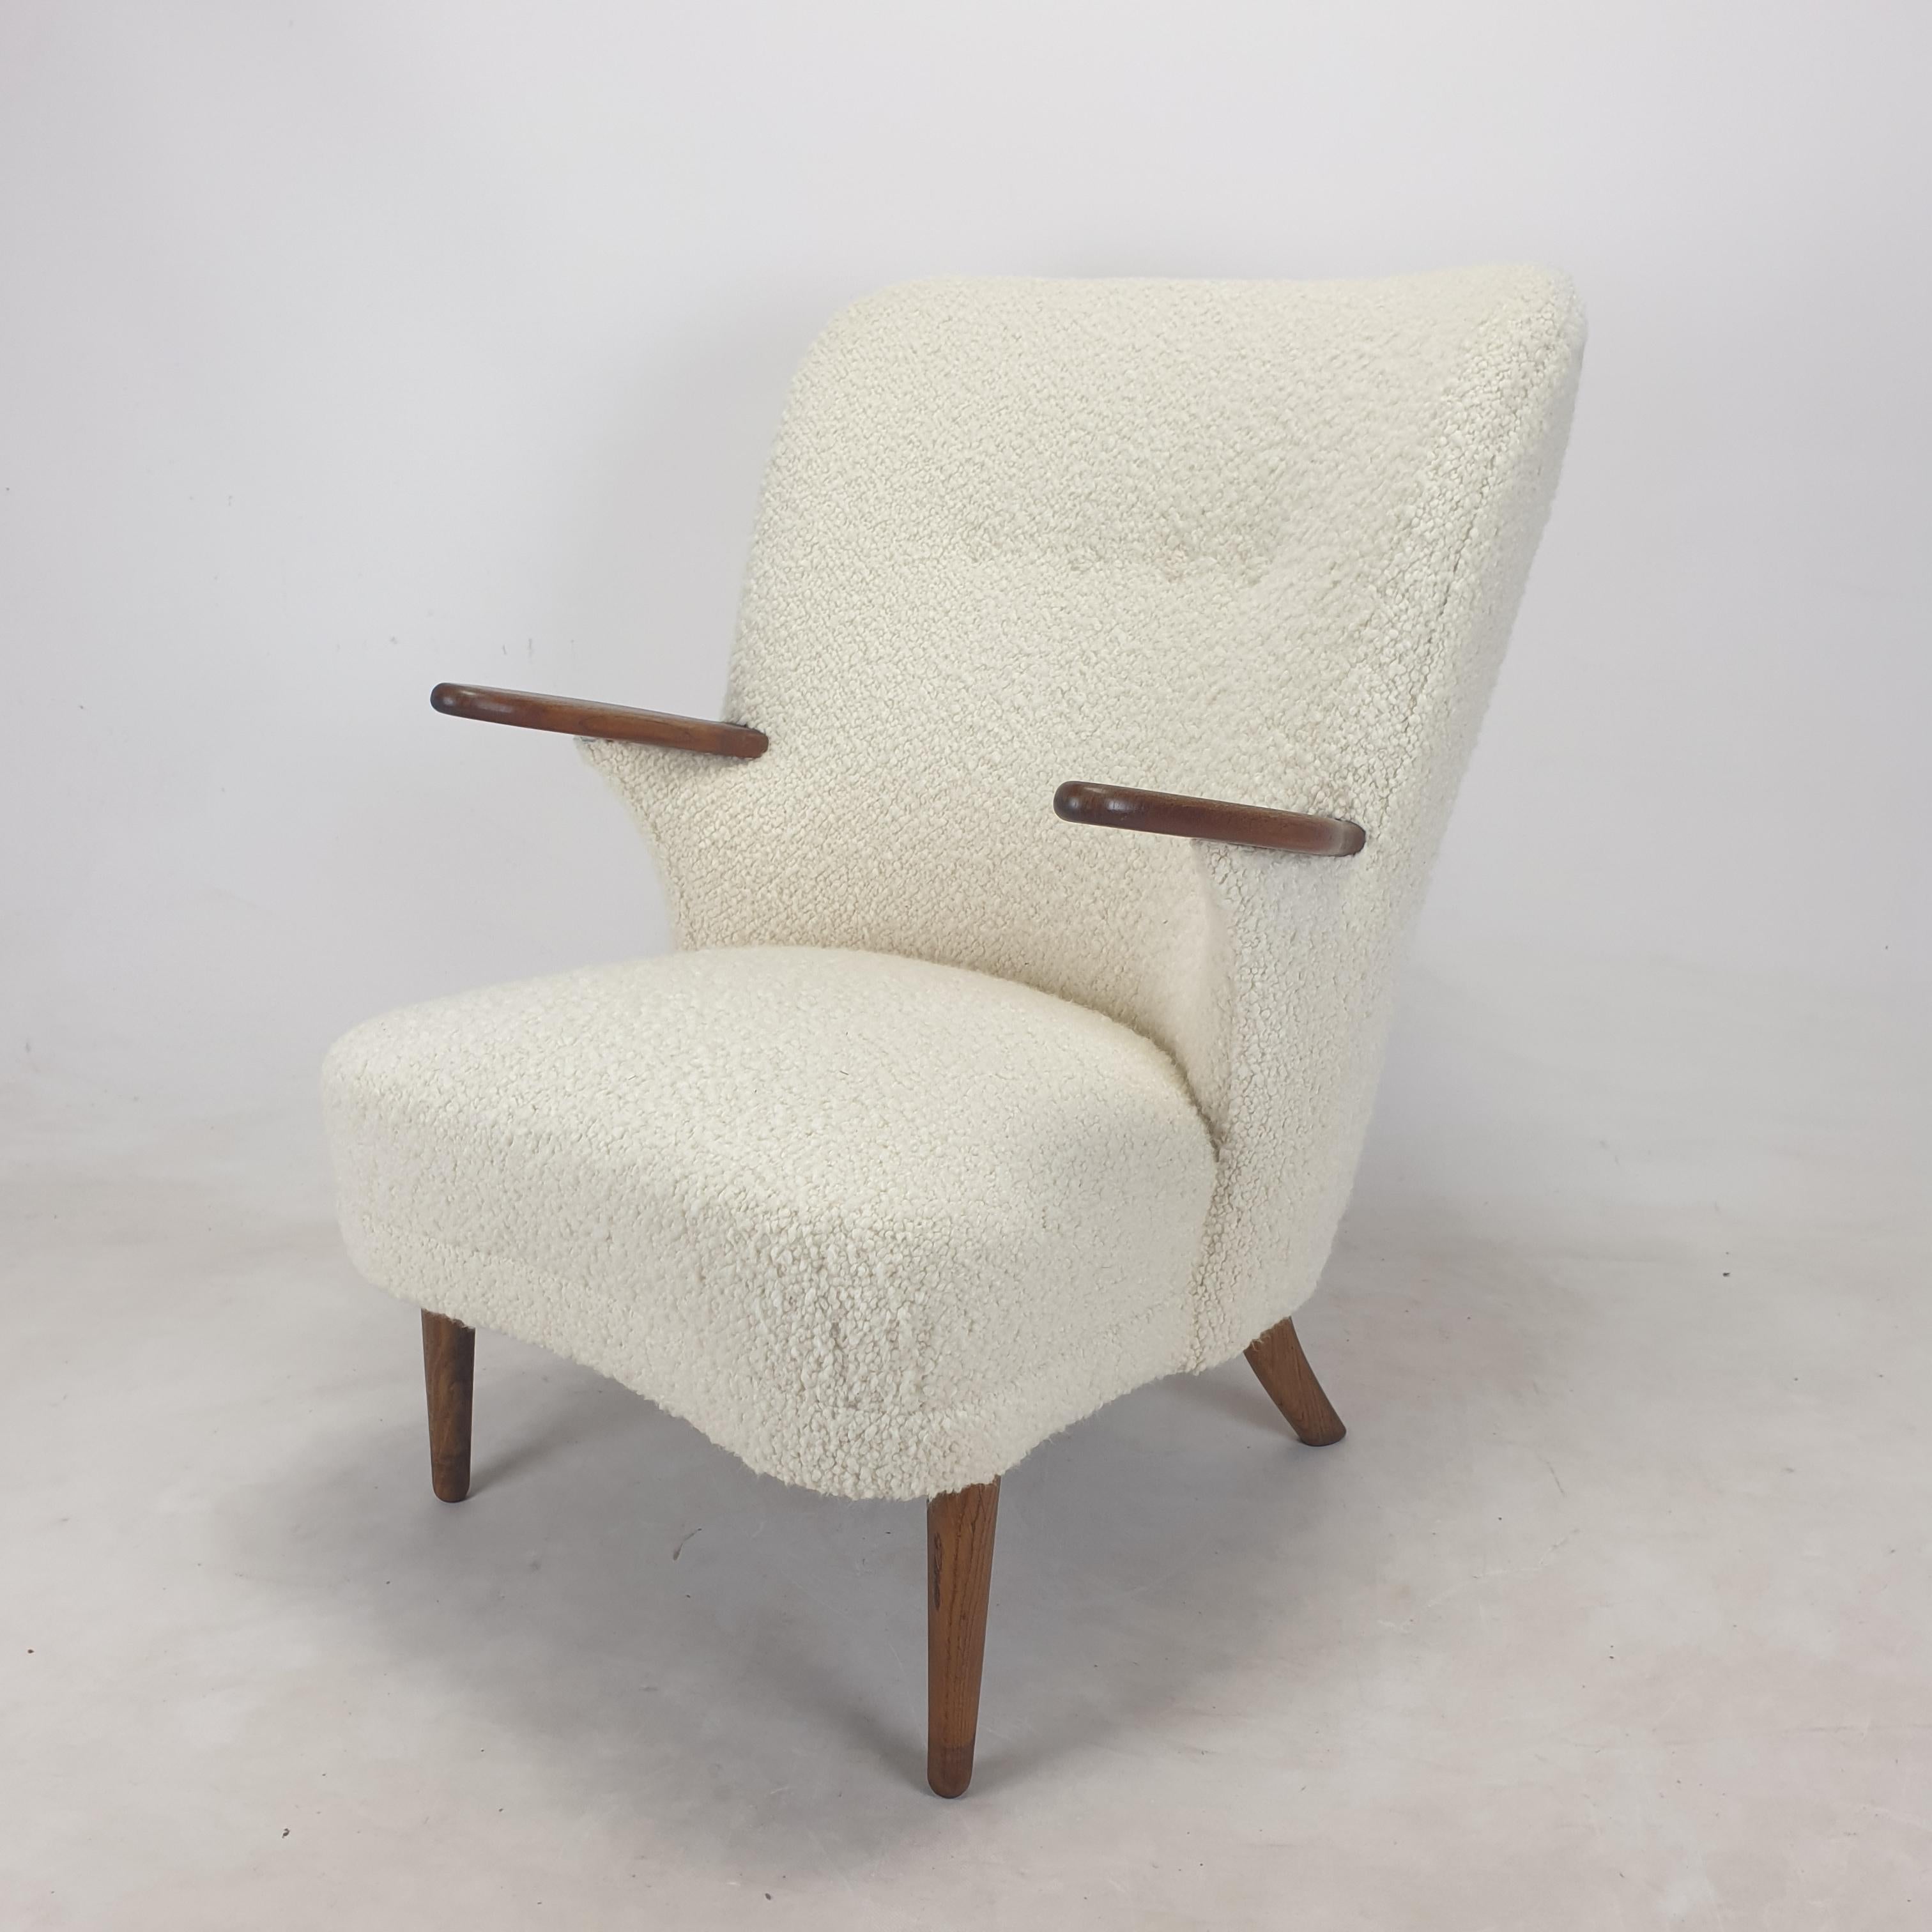 Sehr seltene und bequeme Sesselgarnitur, hergestellt von Kronen Aarhus, Dänemark, 1950er Jahre. 
Es gibt eine höhere (männliche) und eine niedrigere (weibliche) Version, so dass es sich um ein Paar handelt.

Beide Stühle dieser atemberaubenden